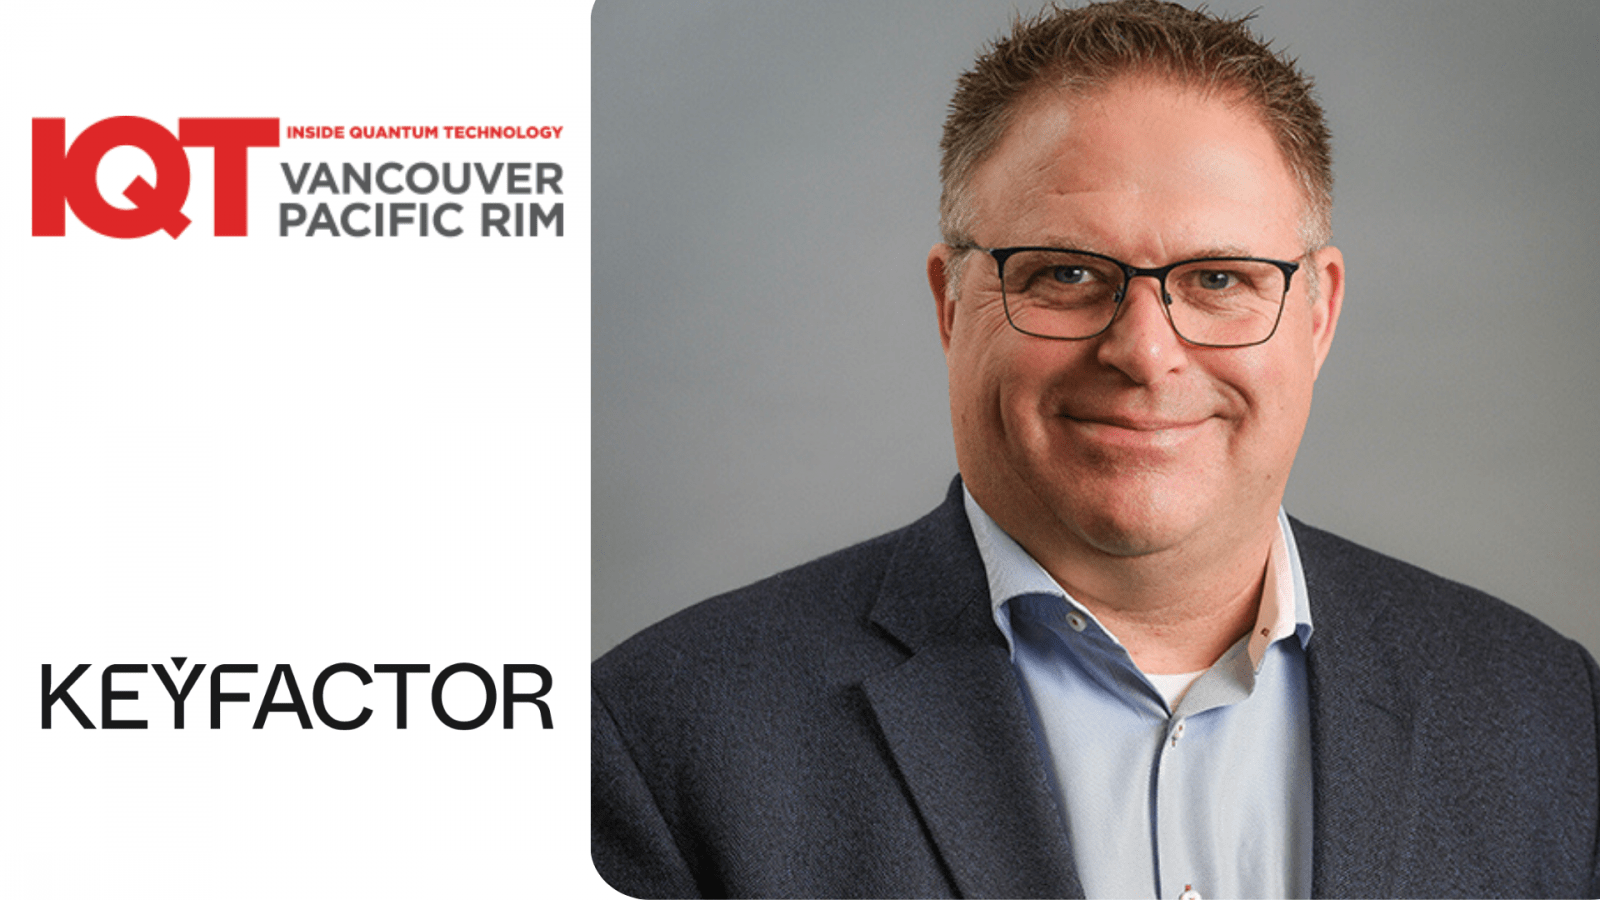 Actualización de IQT Vancouver/Pacific Rim: Chris Hickman, director de seguridad de Keyfactor, será el orador de 2024 - Inside Quantum Technology